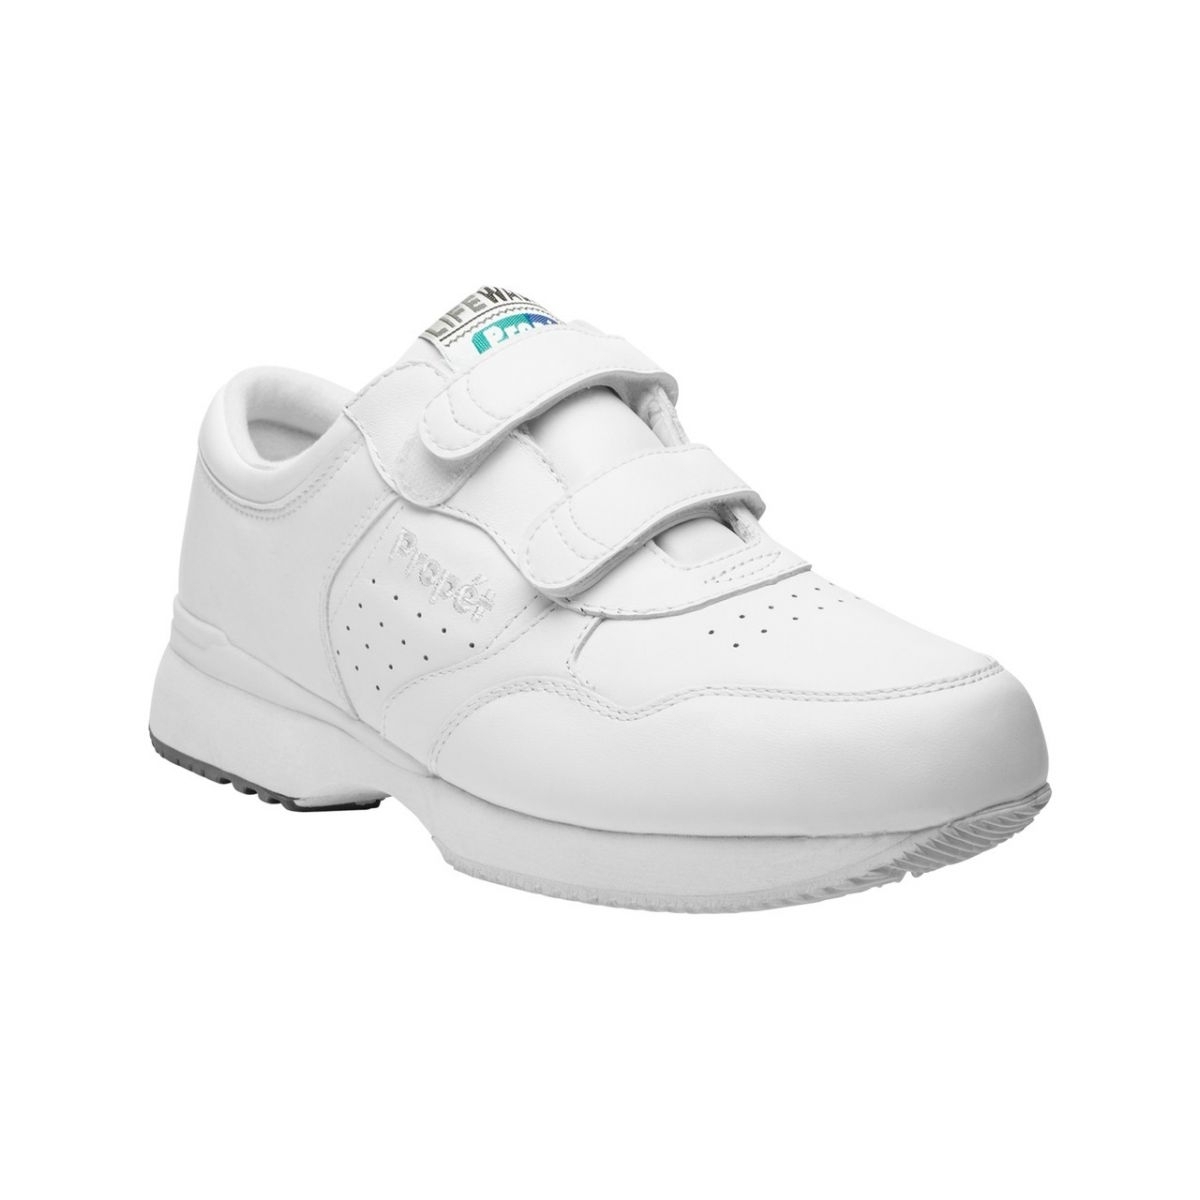 Propet Men's Life Walker Strap Shoe White - M3705WHT WHITE - WHITE, 18